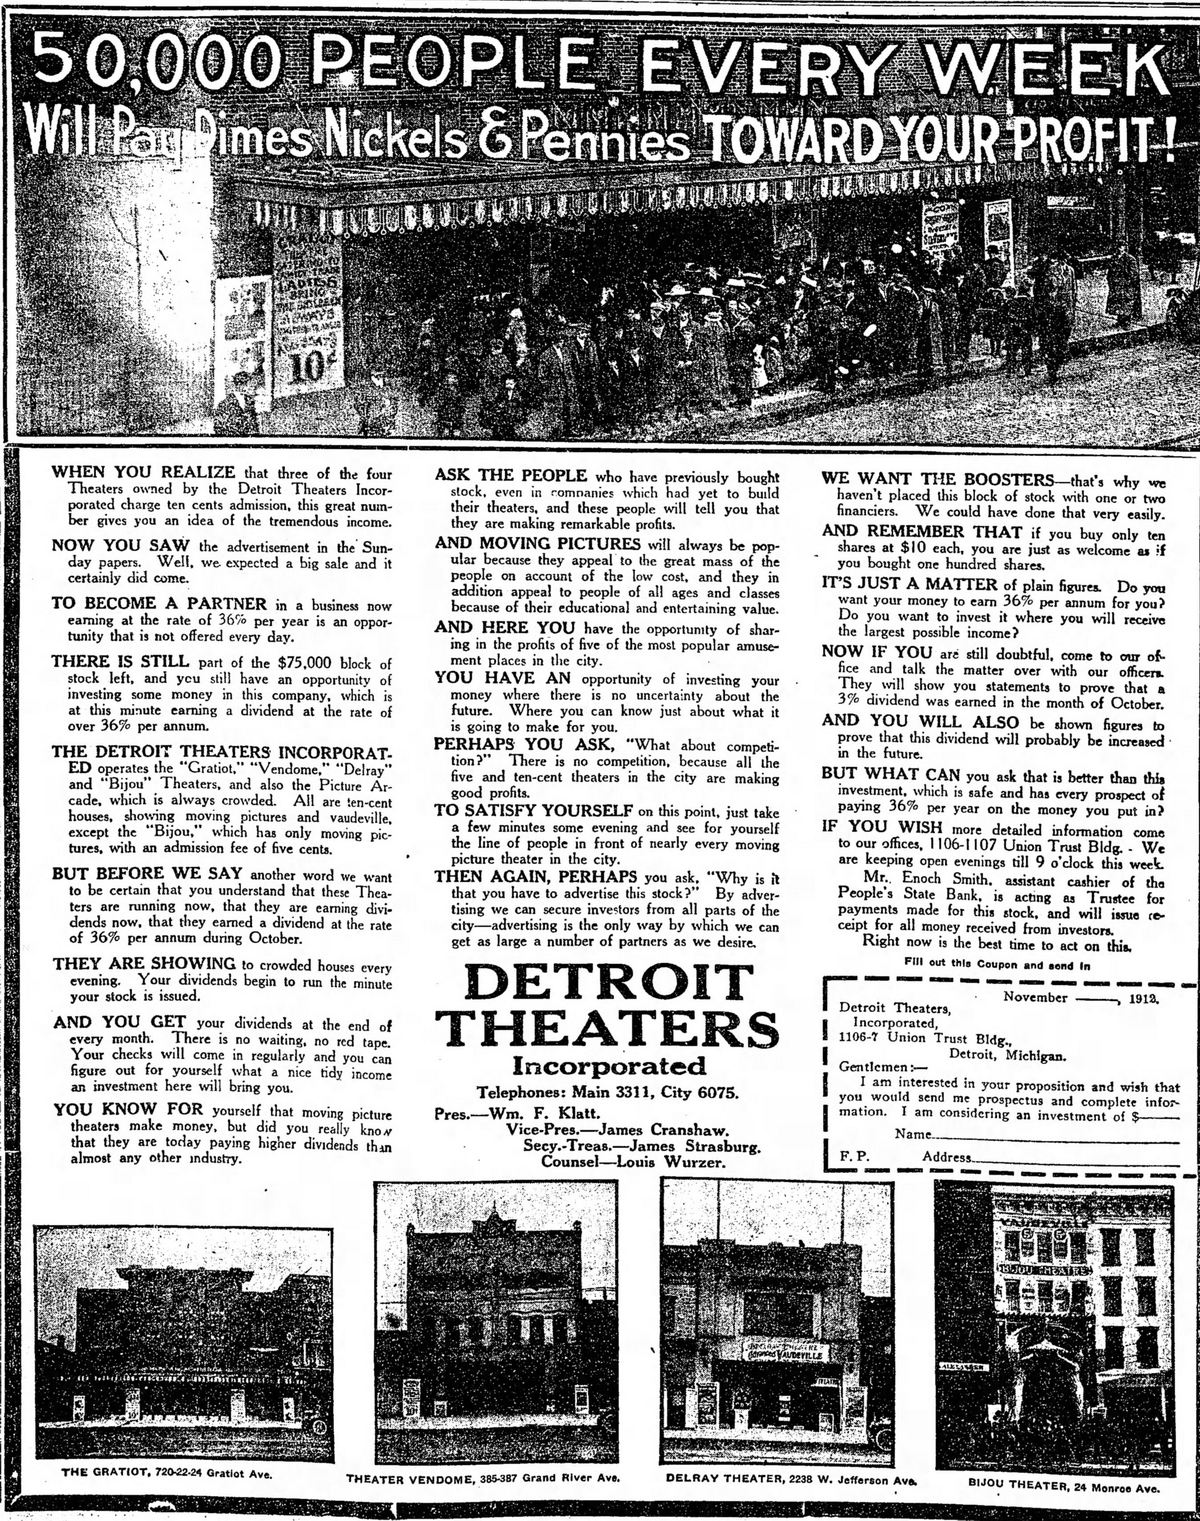 Gratiot Theatre - November 1912 Ad